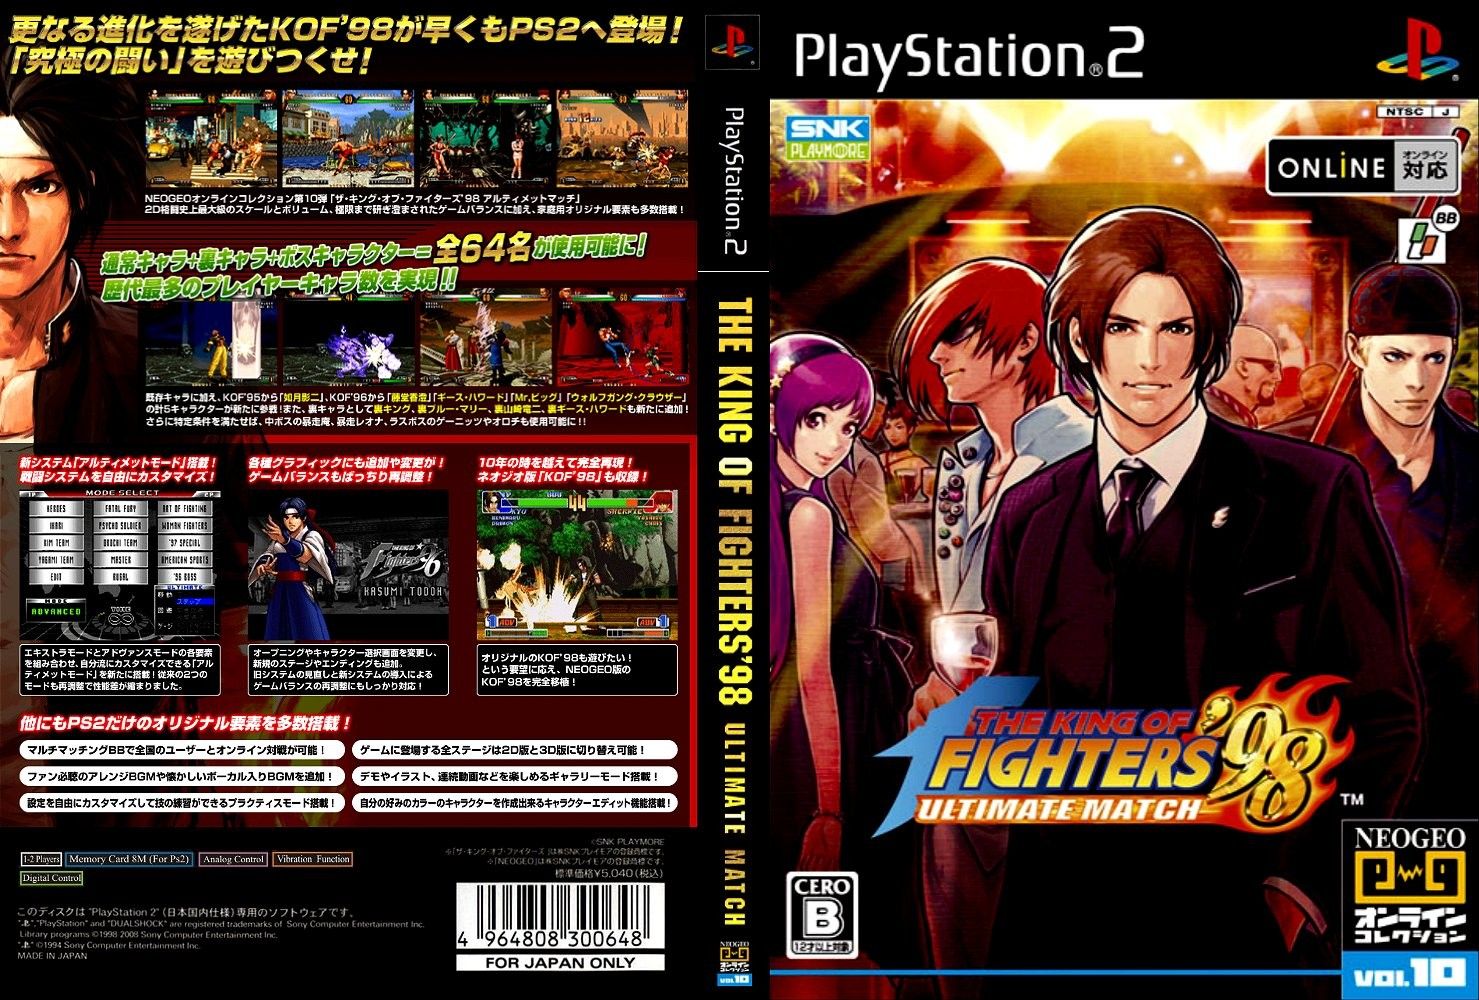 Aplicaciones y Juegos: The King Of Fighters 98 Ultimate Match